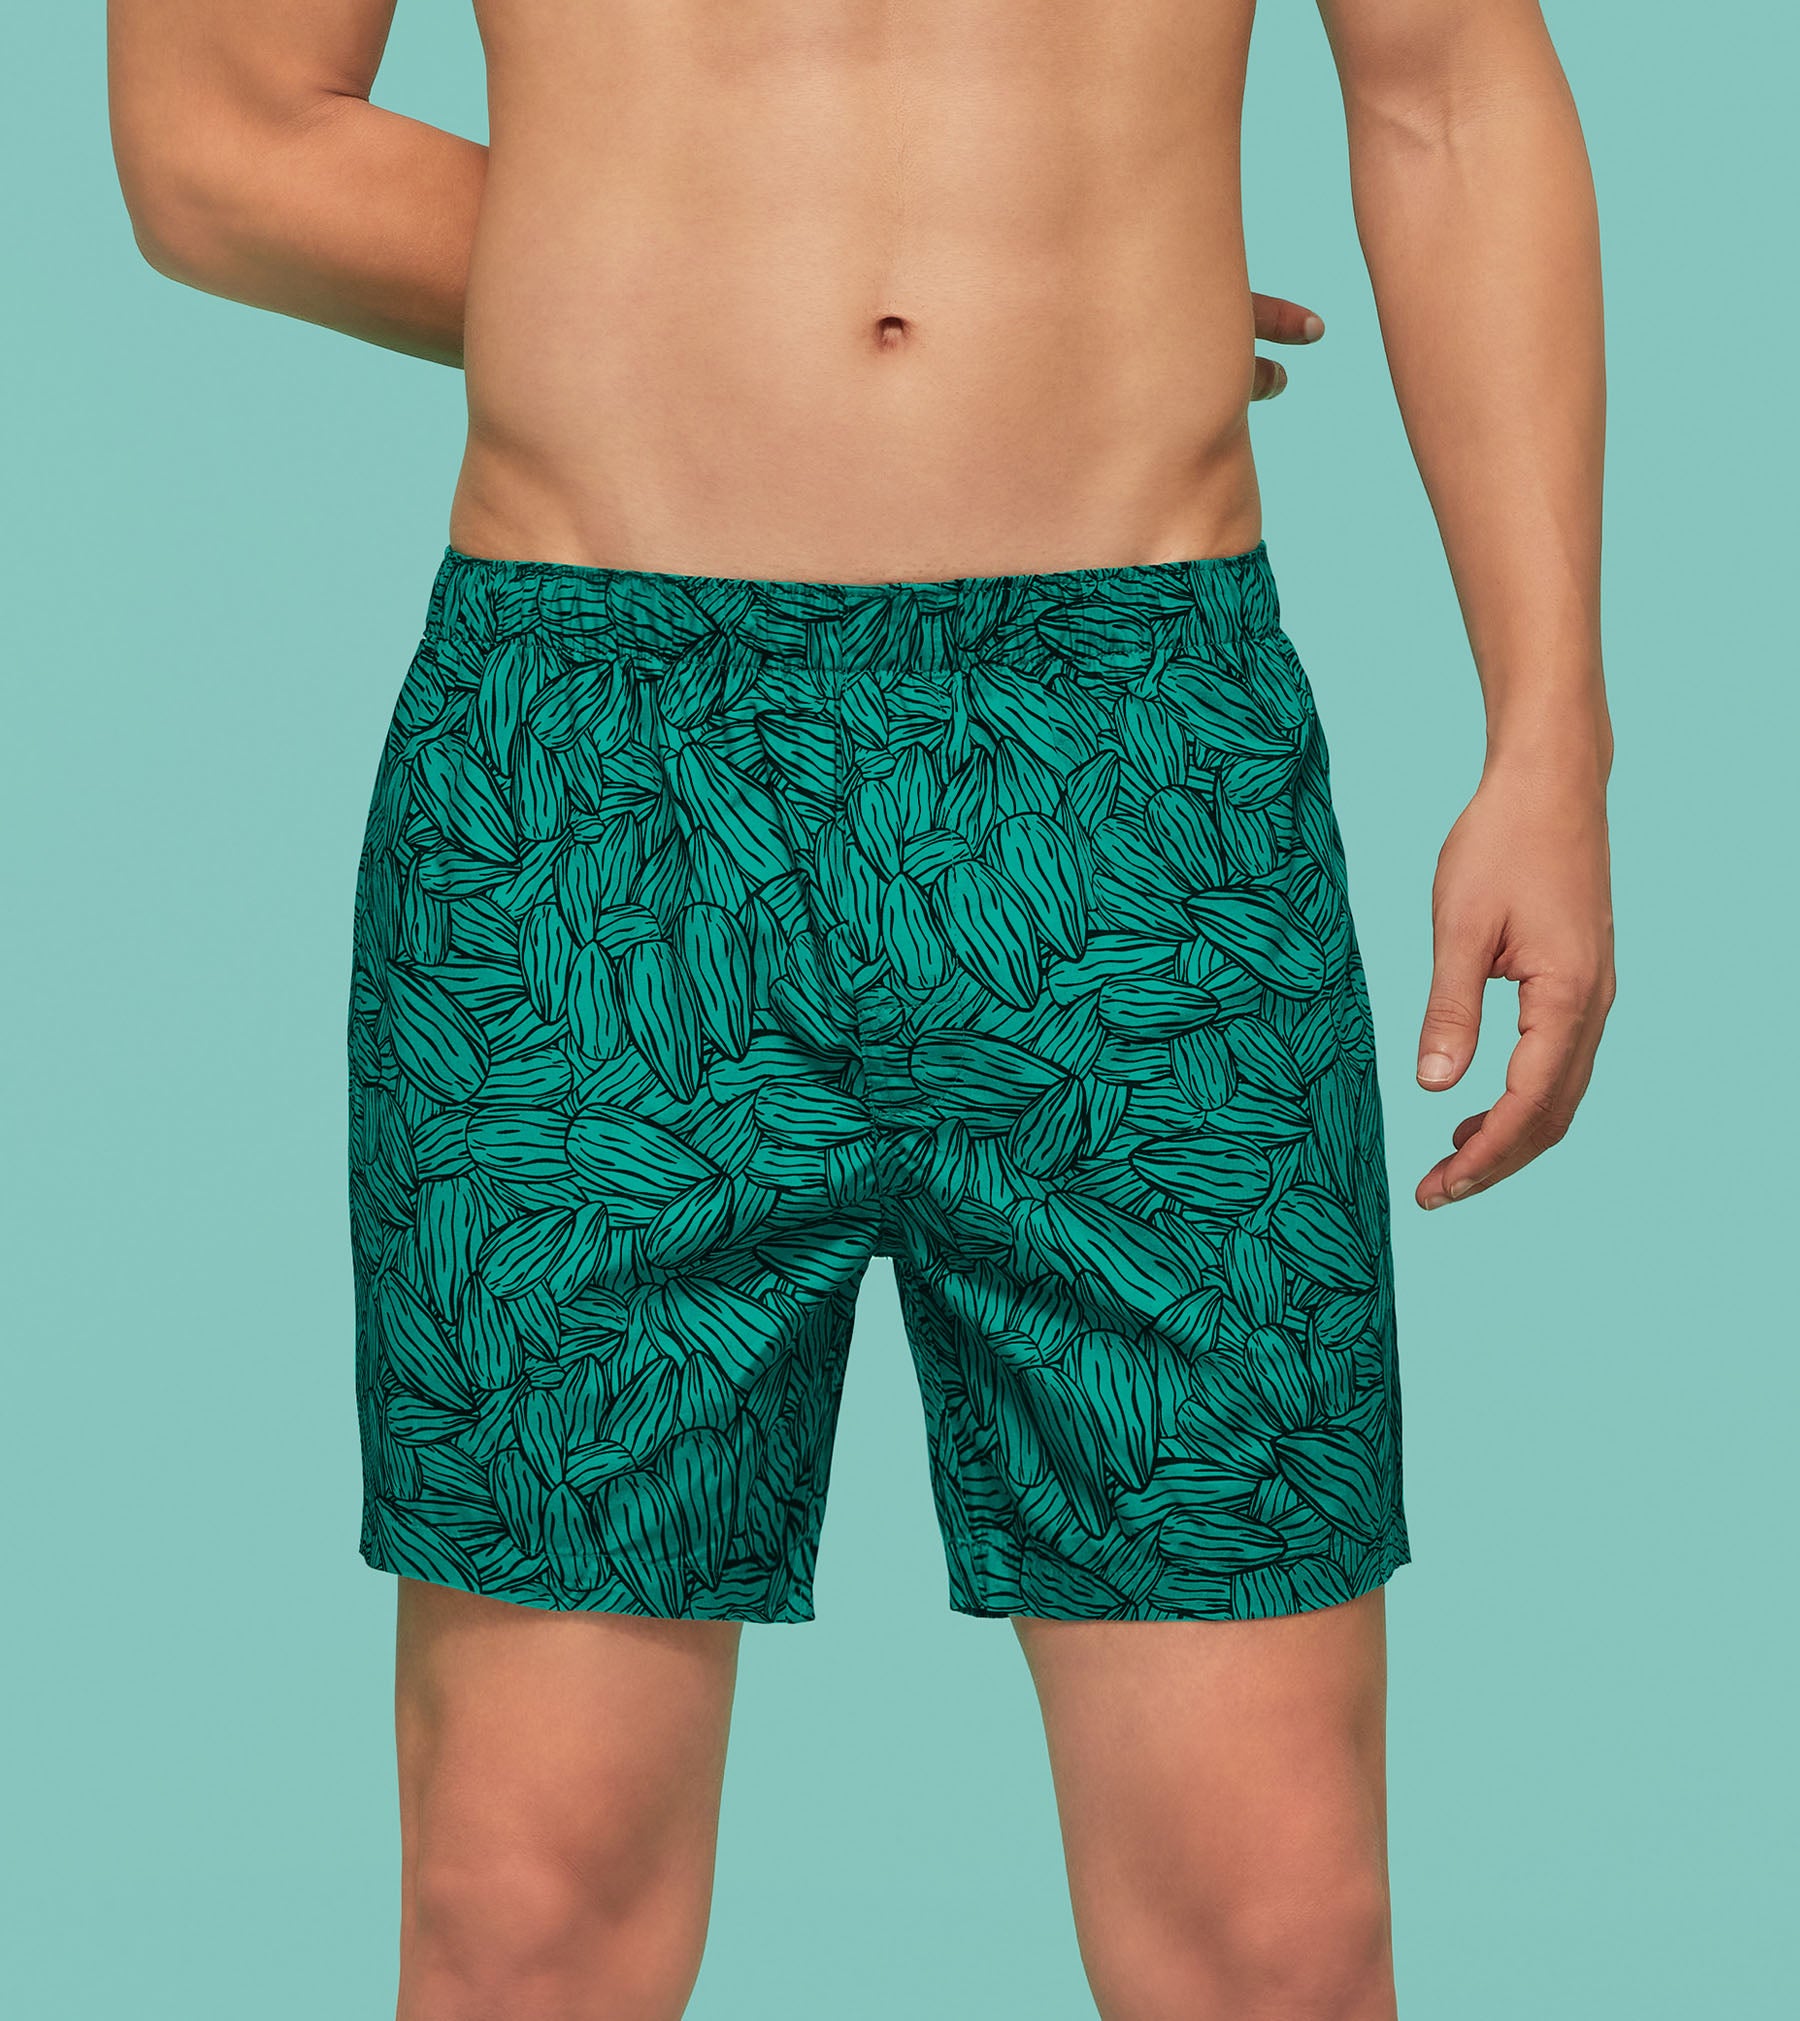 Men's Boxer Briefs Underwear for Men Underwear Combed Cotton Solid